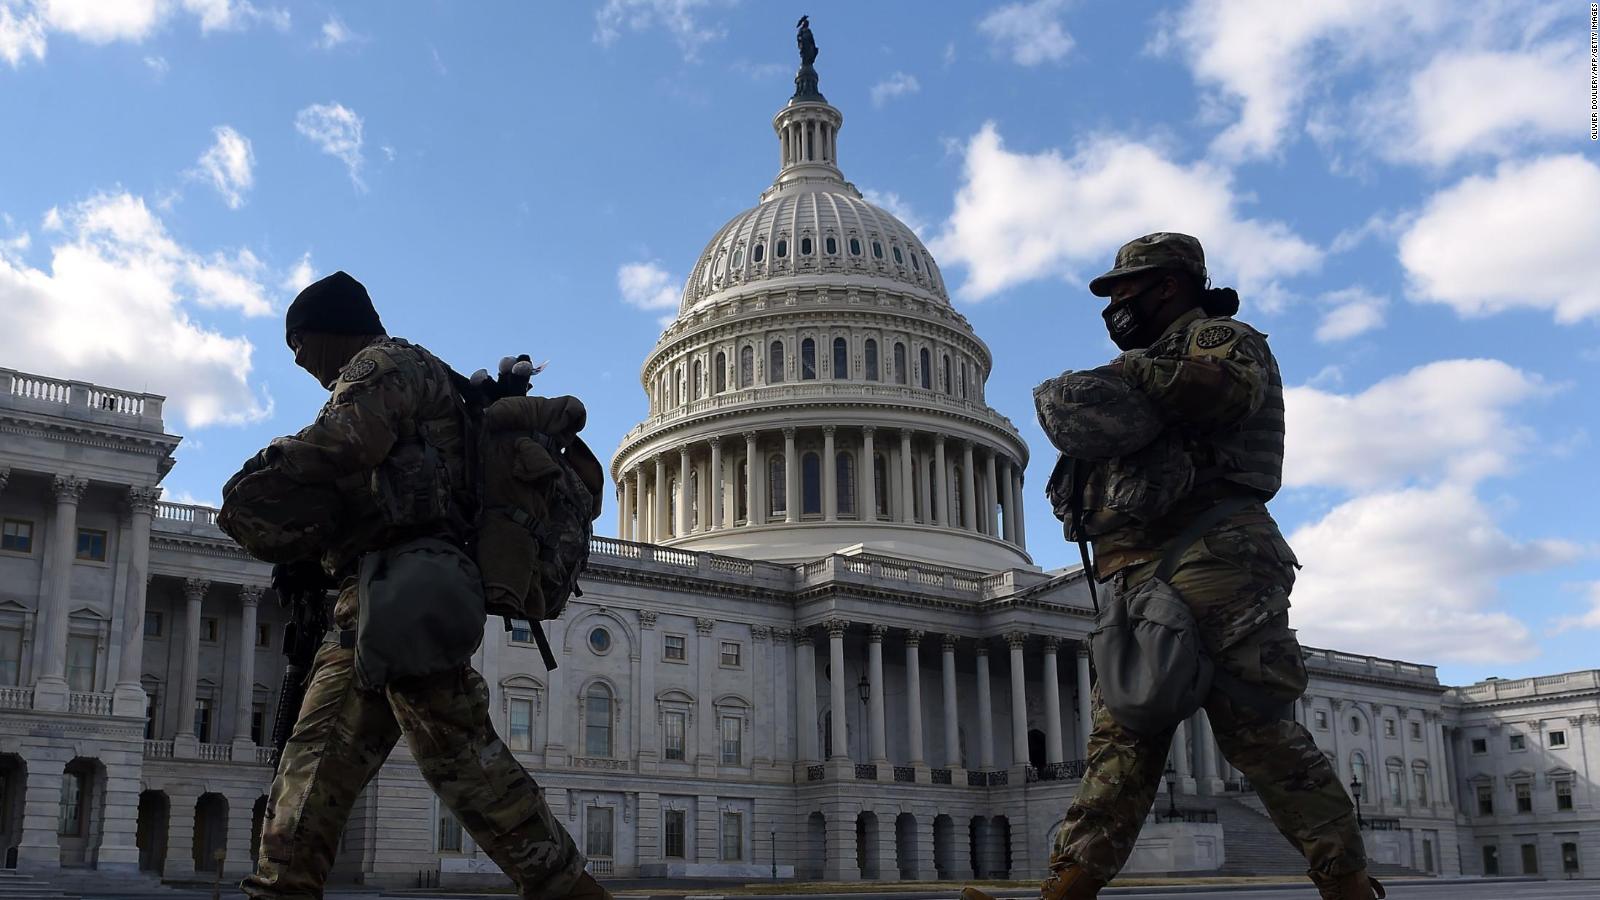 Efectivos de la Guardia Nacional de California terminan rotación en el  Capitolio | Video | CNN